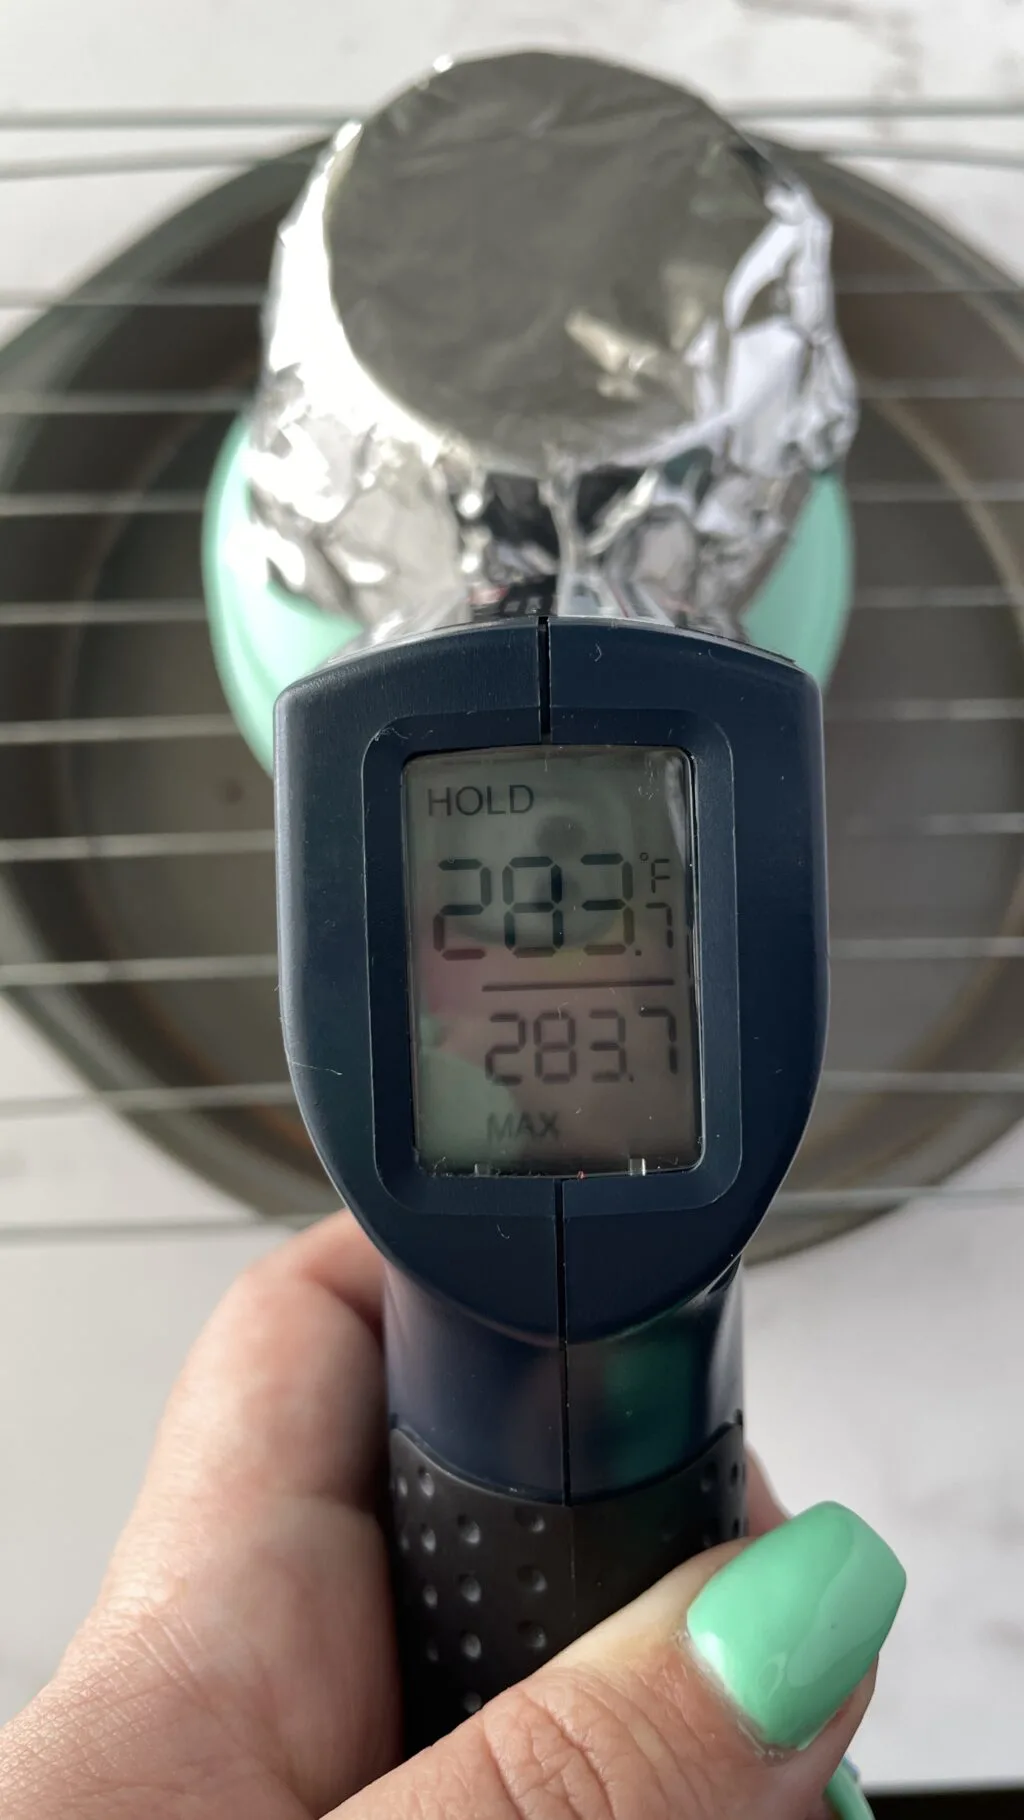 heat from flower pot heater